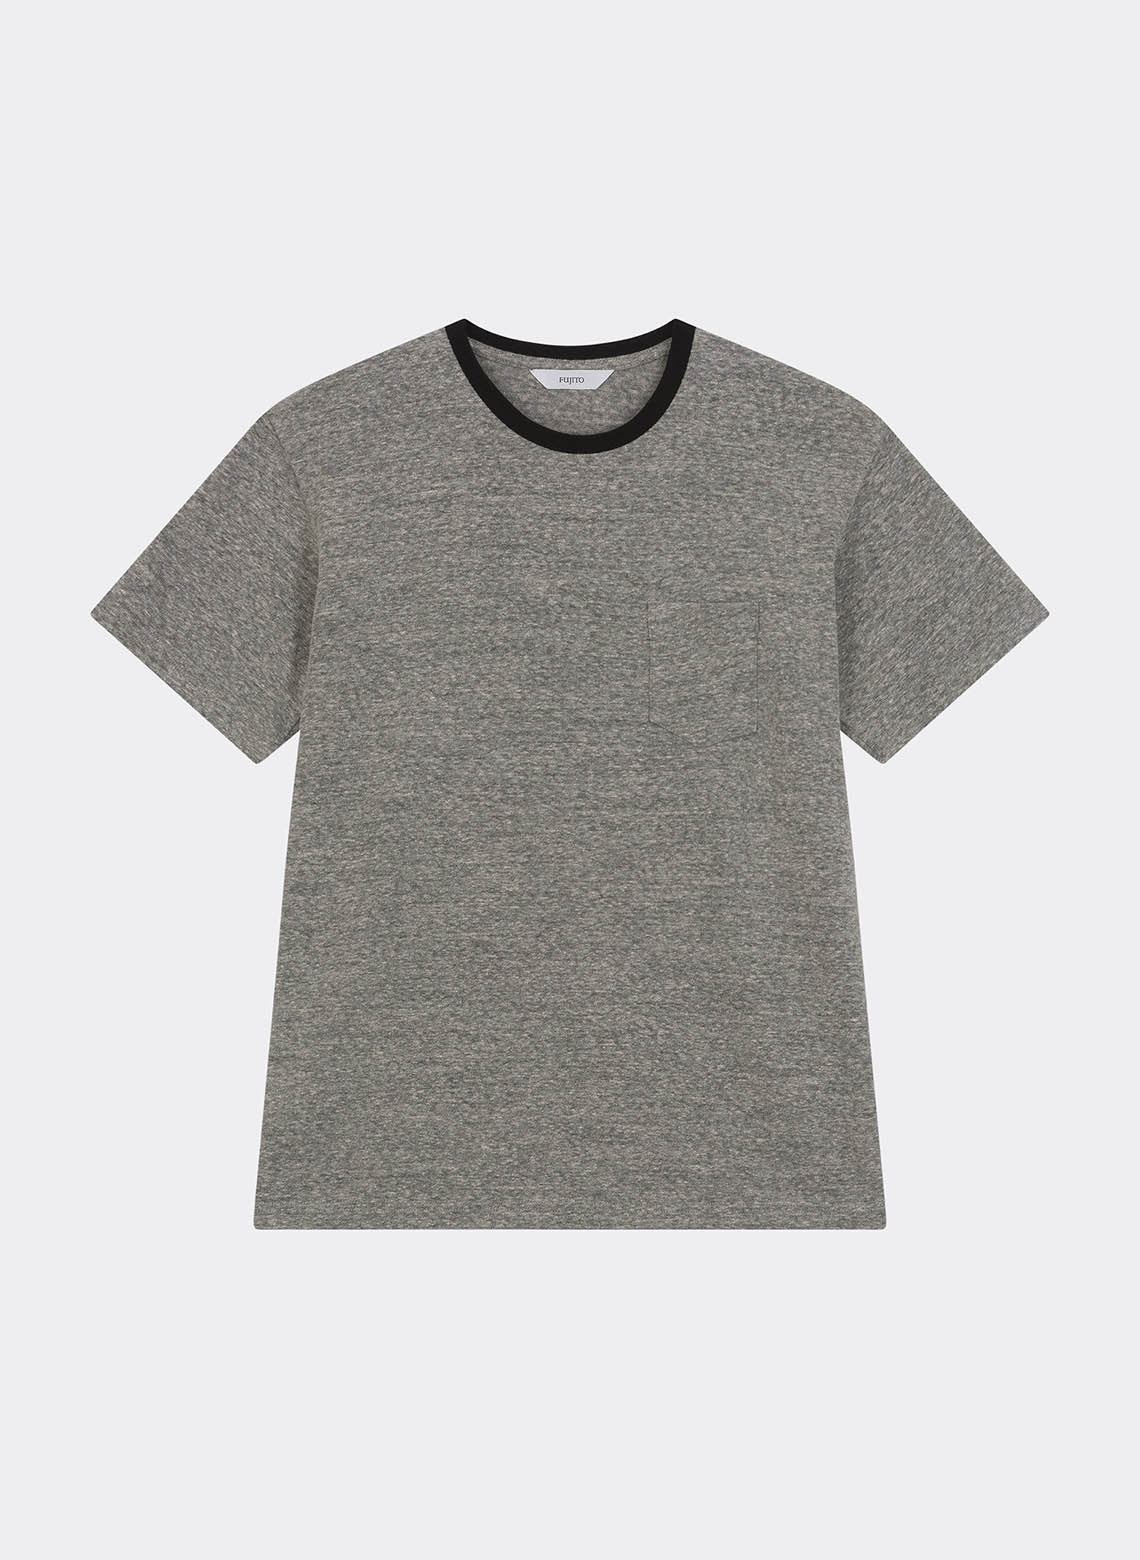 Pocket Ringer T-Shirt Gray/Black